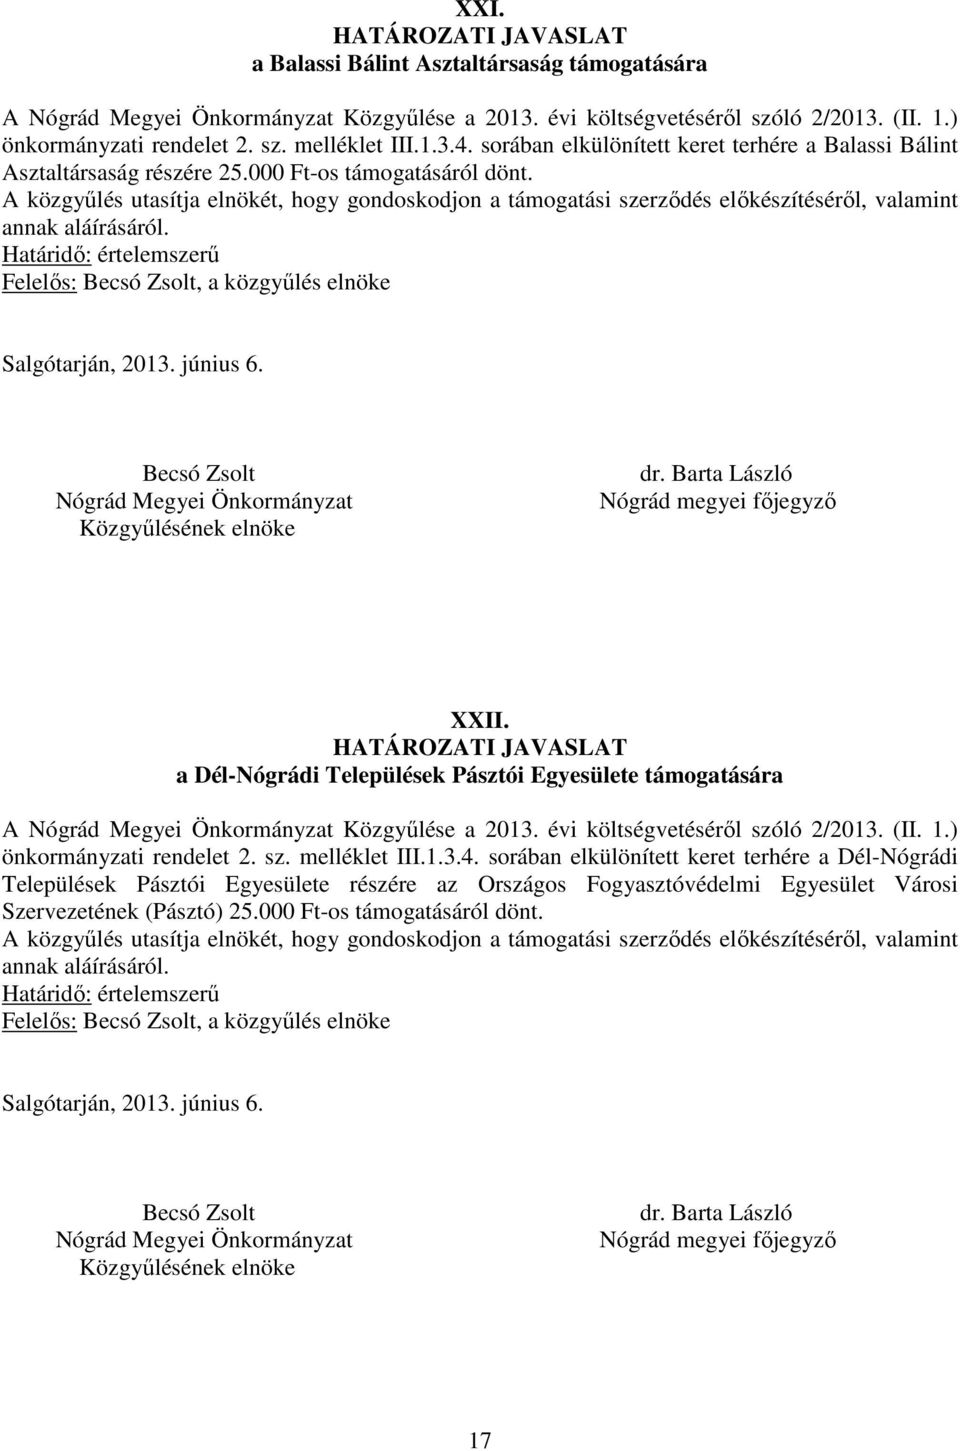 a Dél-Nógrádi Települések Pásztói Egyesülete támogatására A Közgyűlése a 2013. évi költségvetéséről szóló 2/2013. (II. 1.) önkormányzati rendelet 2. sz. melléklet III.1.3.4.